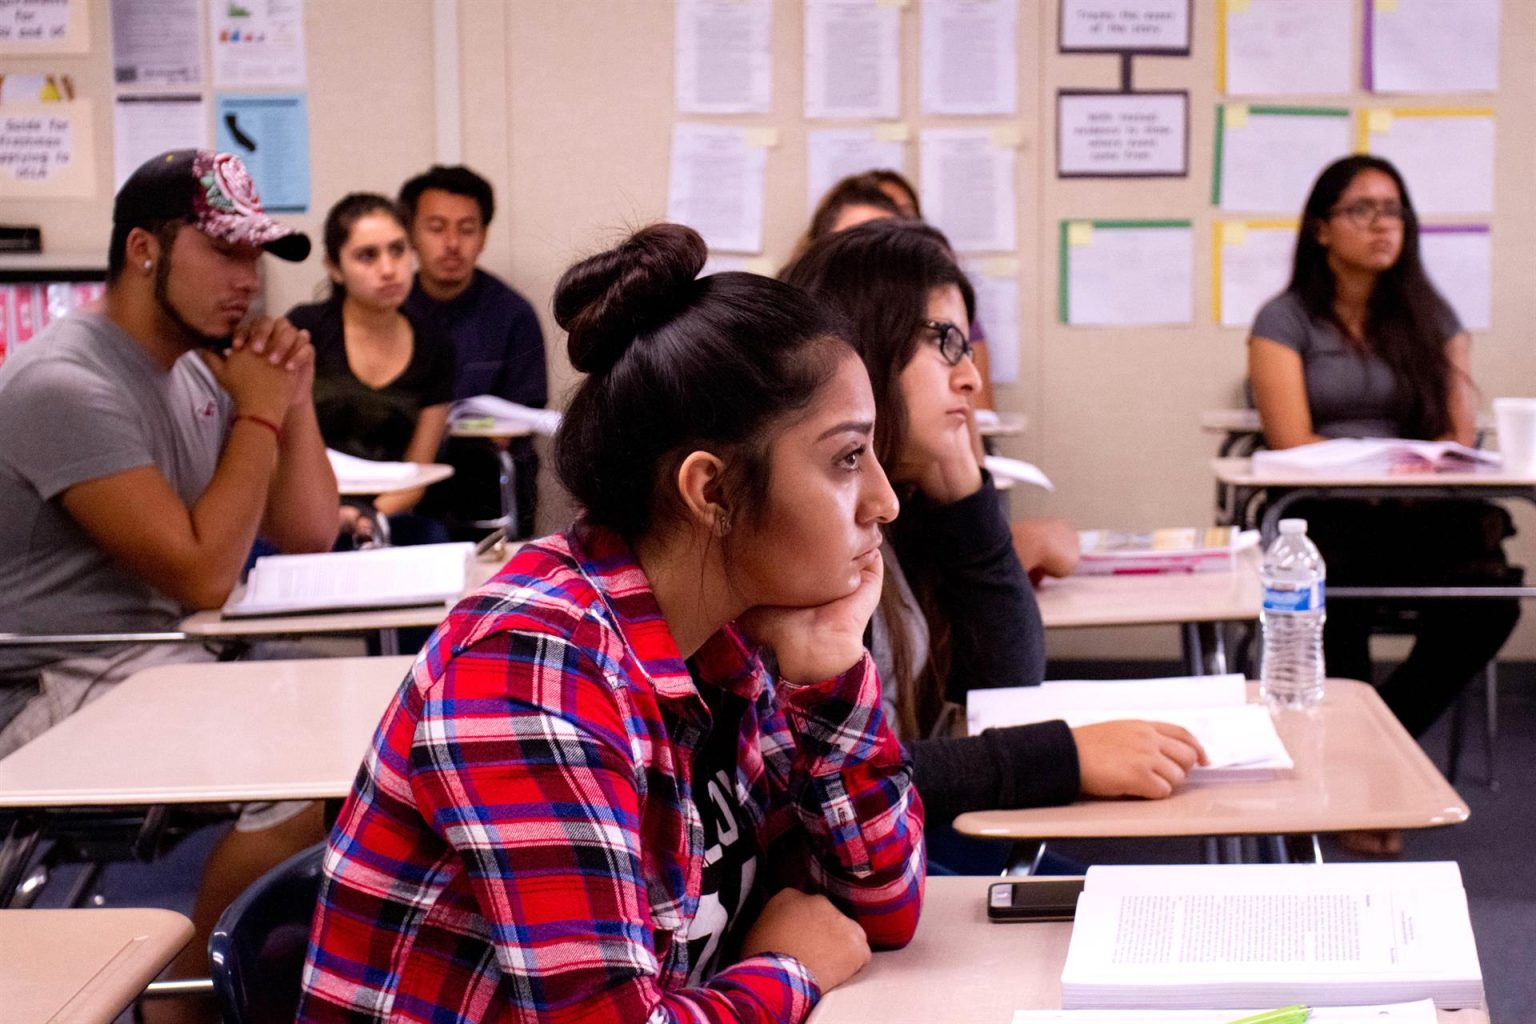 Vista de varios estudiantes mientras toman clase. Imagen de archivo. EFE/Felipe Chacón